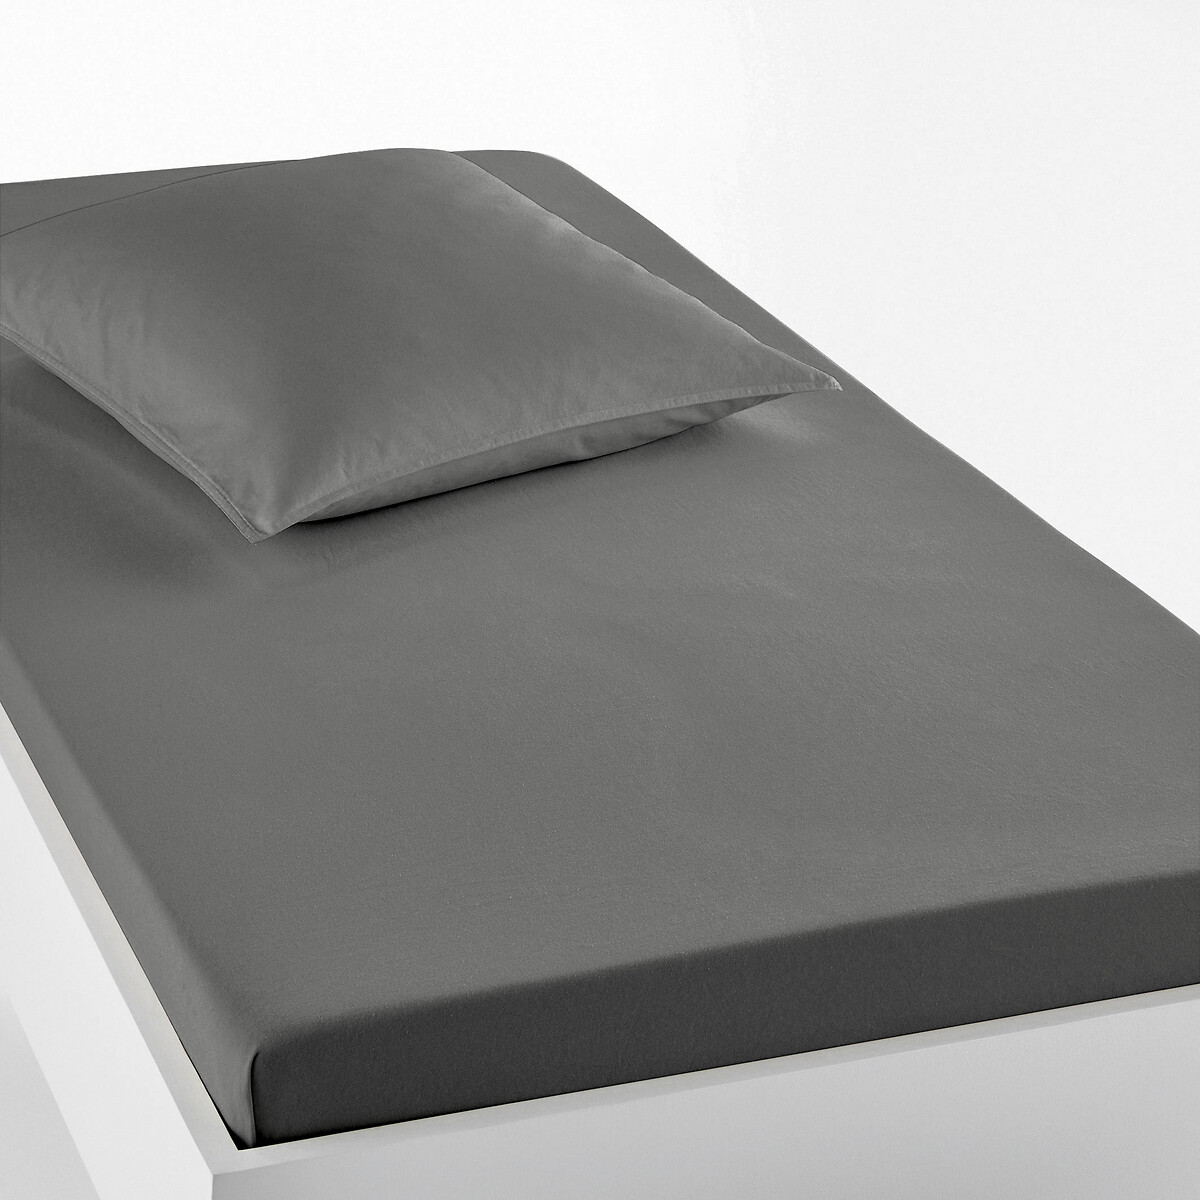 Натяжная простыня Из джерси для детской кровати Scenario 90 x 140 см серый